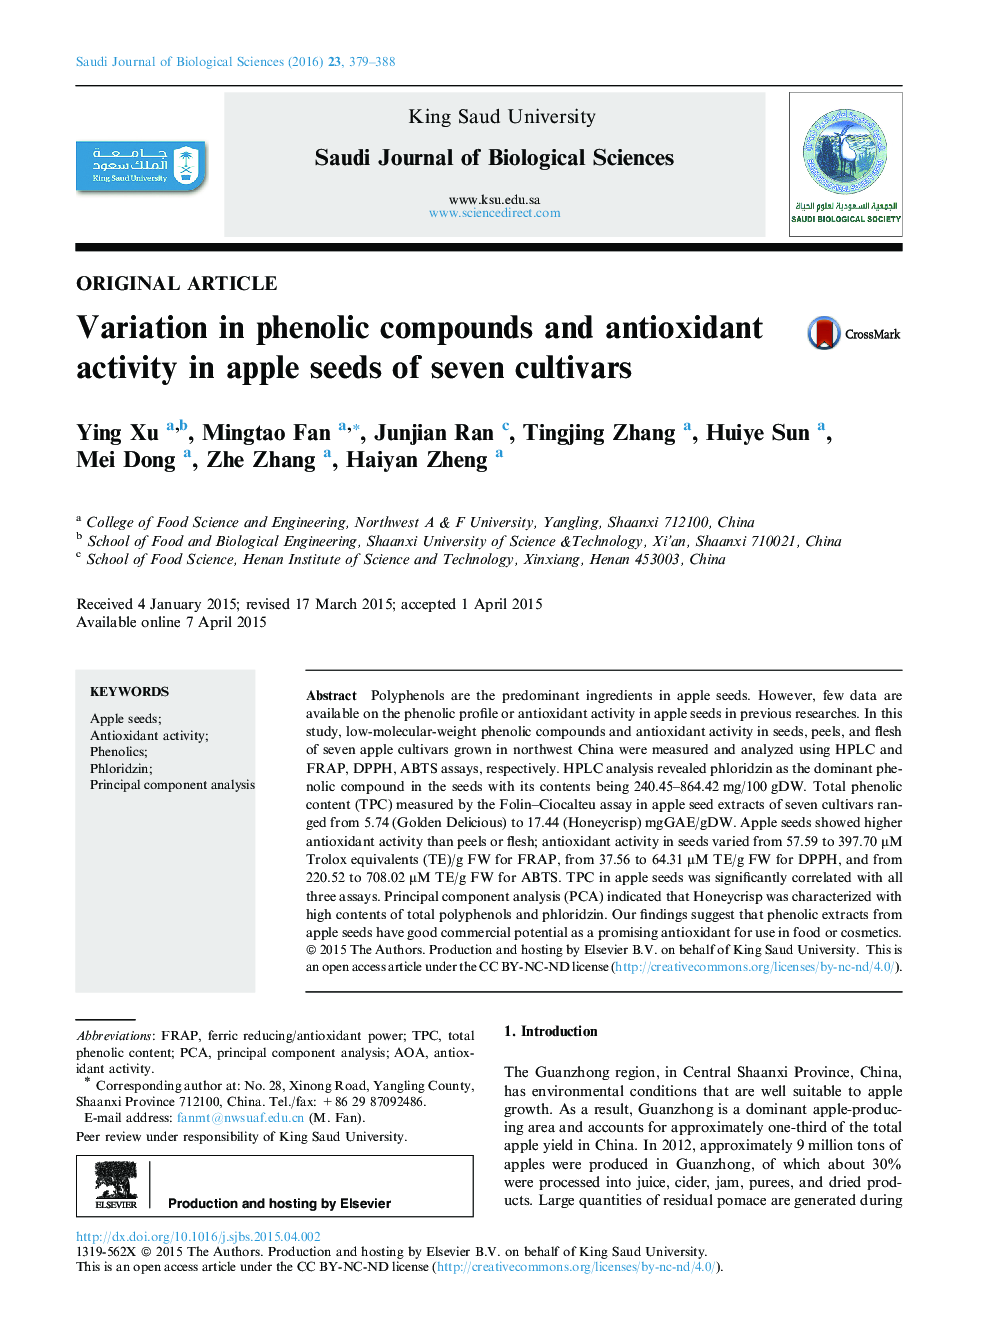 تنوع در ترکیبات فنلی و فعالیت آنتی اکسیدانی در بذرهای سیب هفت رقم 